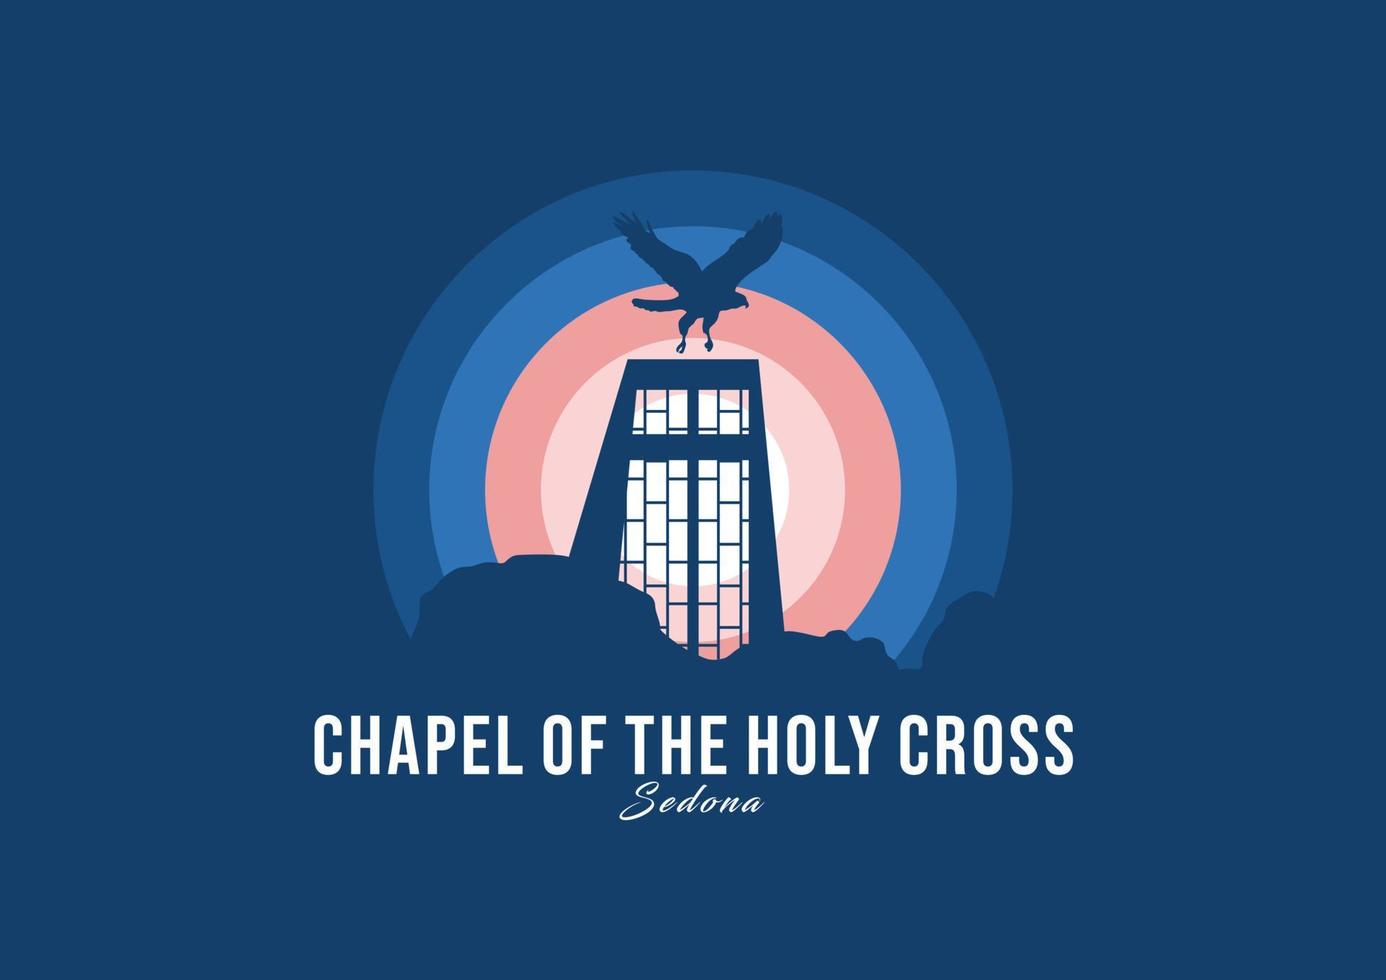 logotipo do edifício capela da santa cruz. maior ilustração de arquitetura do mundo. vetor de símbolo moderno do luar. eps 10